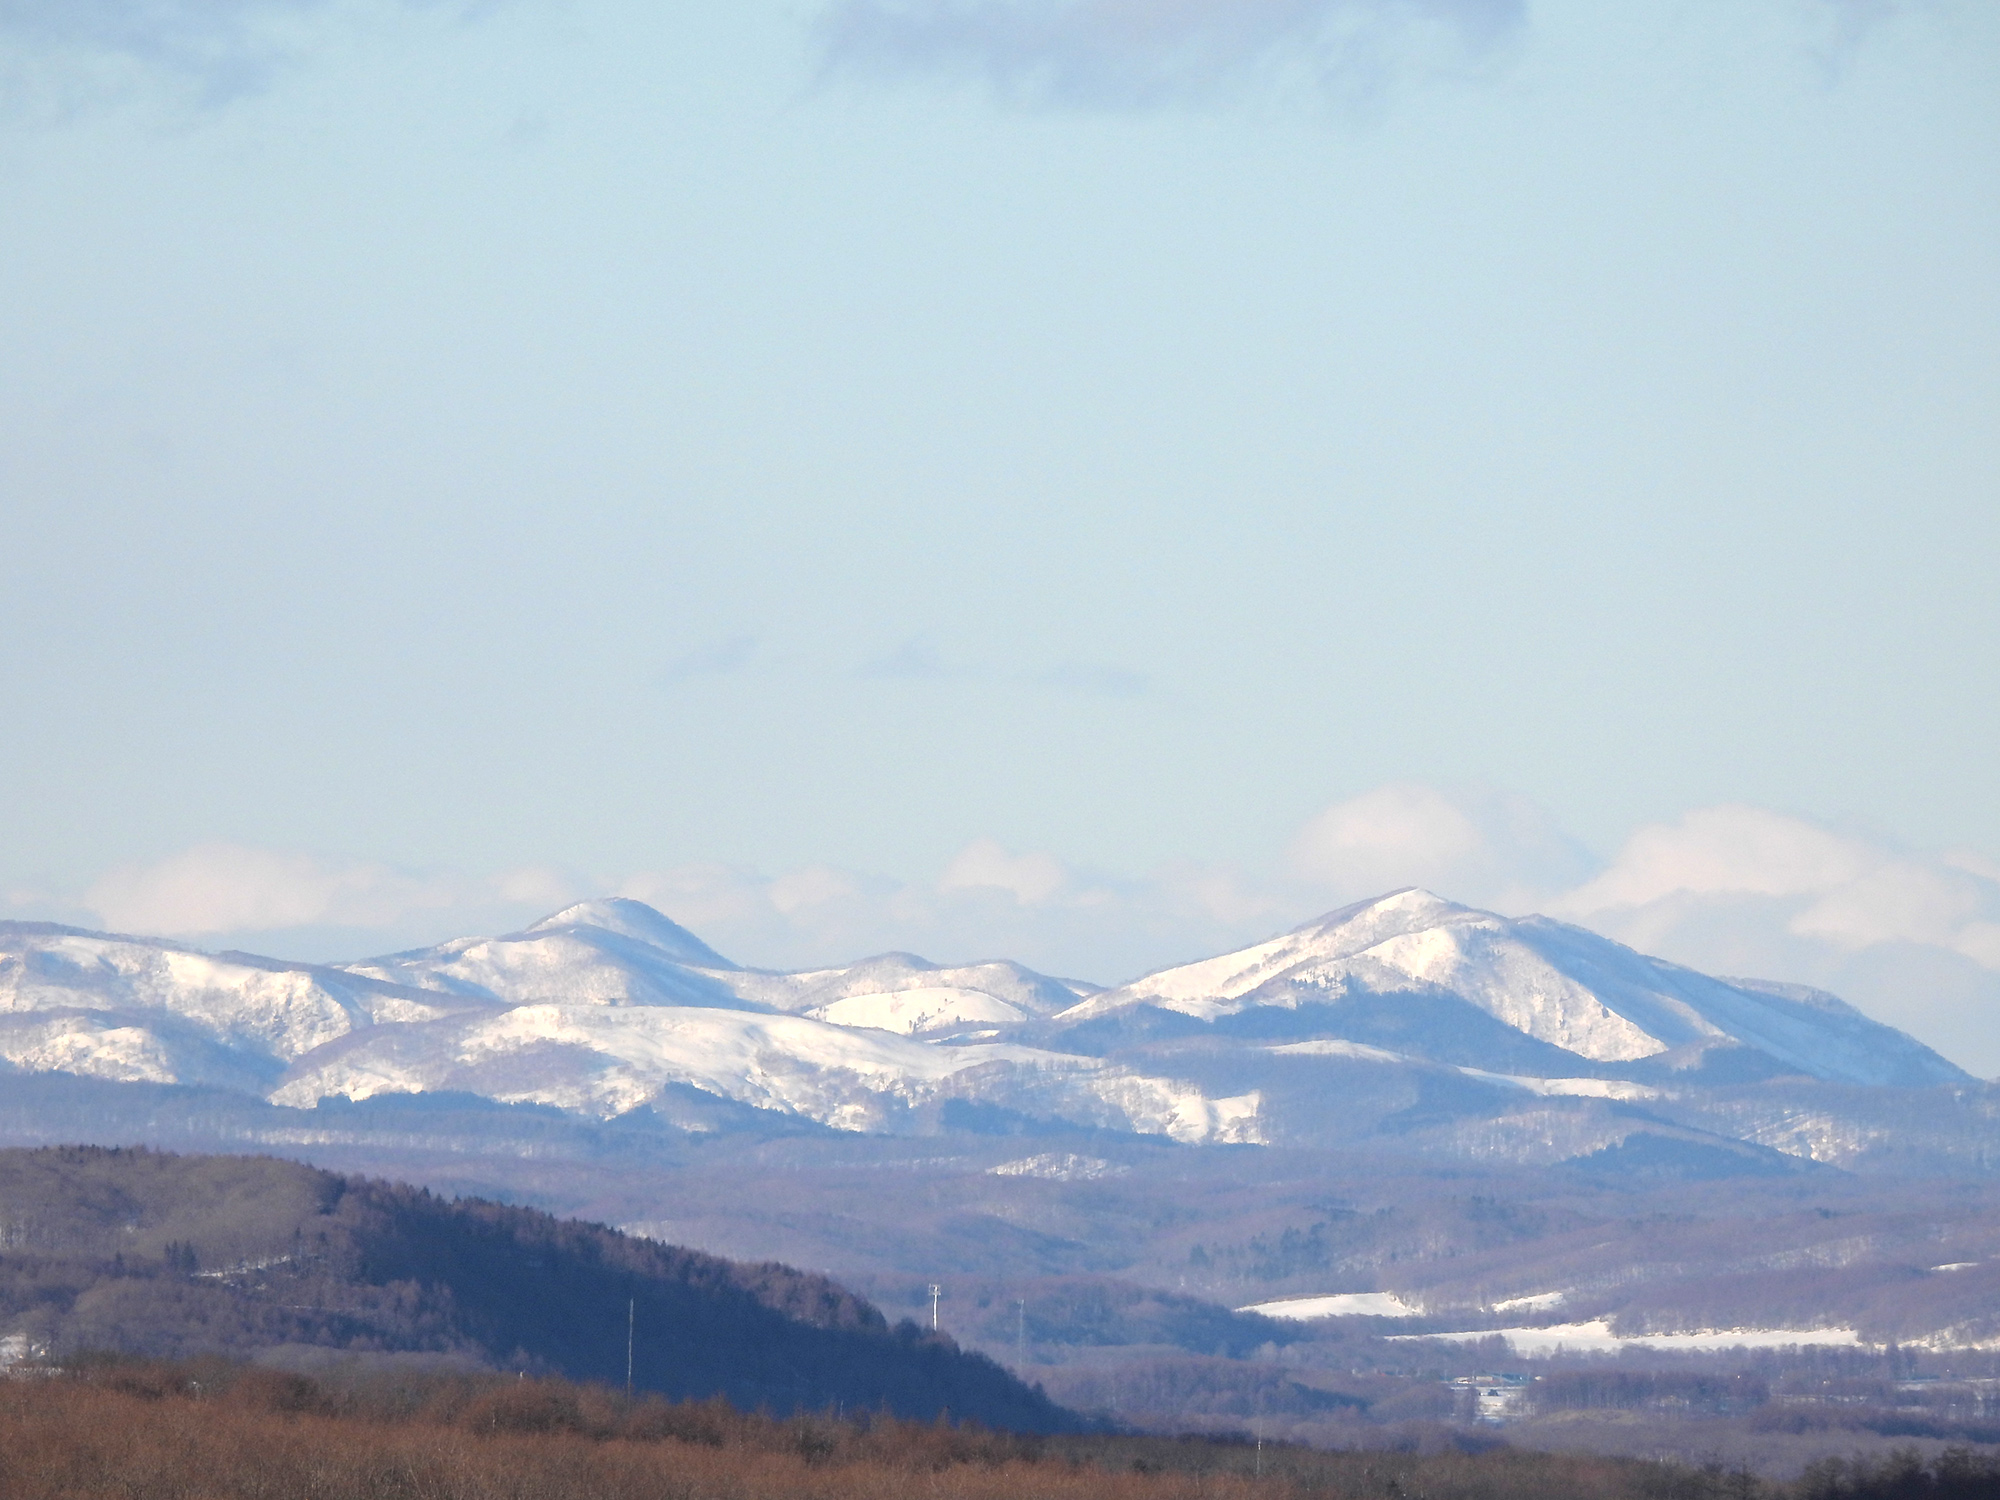 釧路湿原展望台から見えた雪山の写真の無料素材